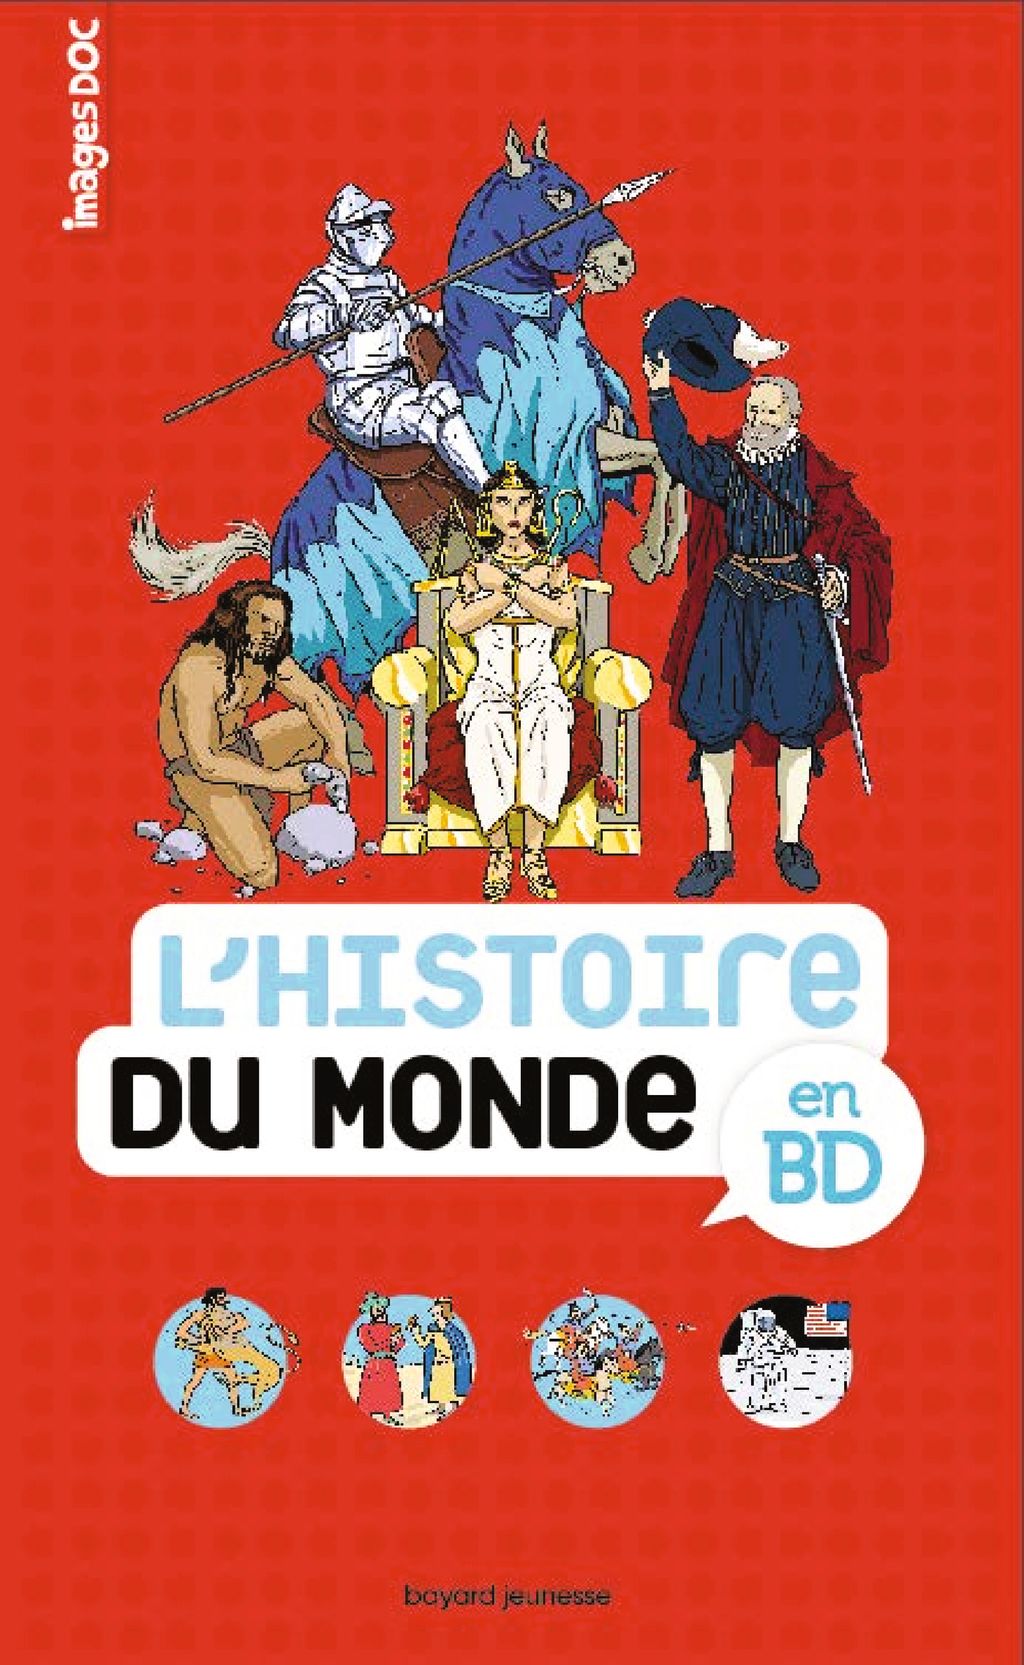 « Histoire du monde en BD » cover